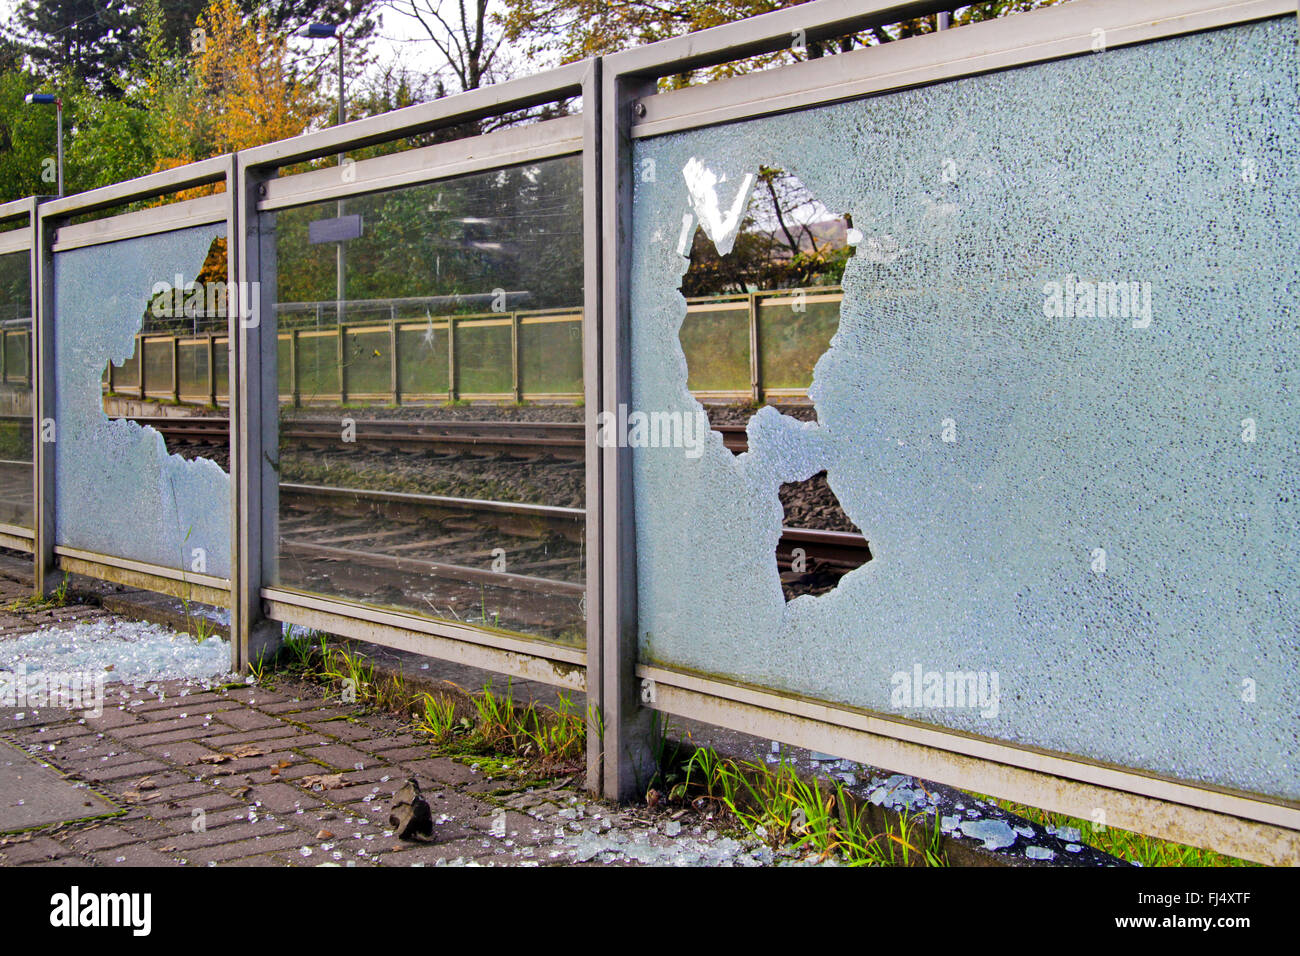 Bris de verre causés par le vandalisme dans une gare, Allemagne Banque D'Images